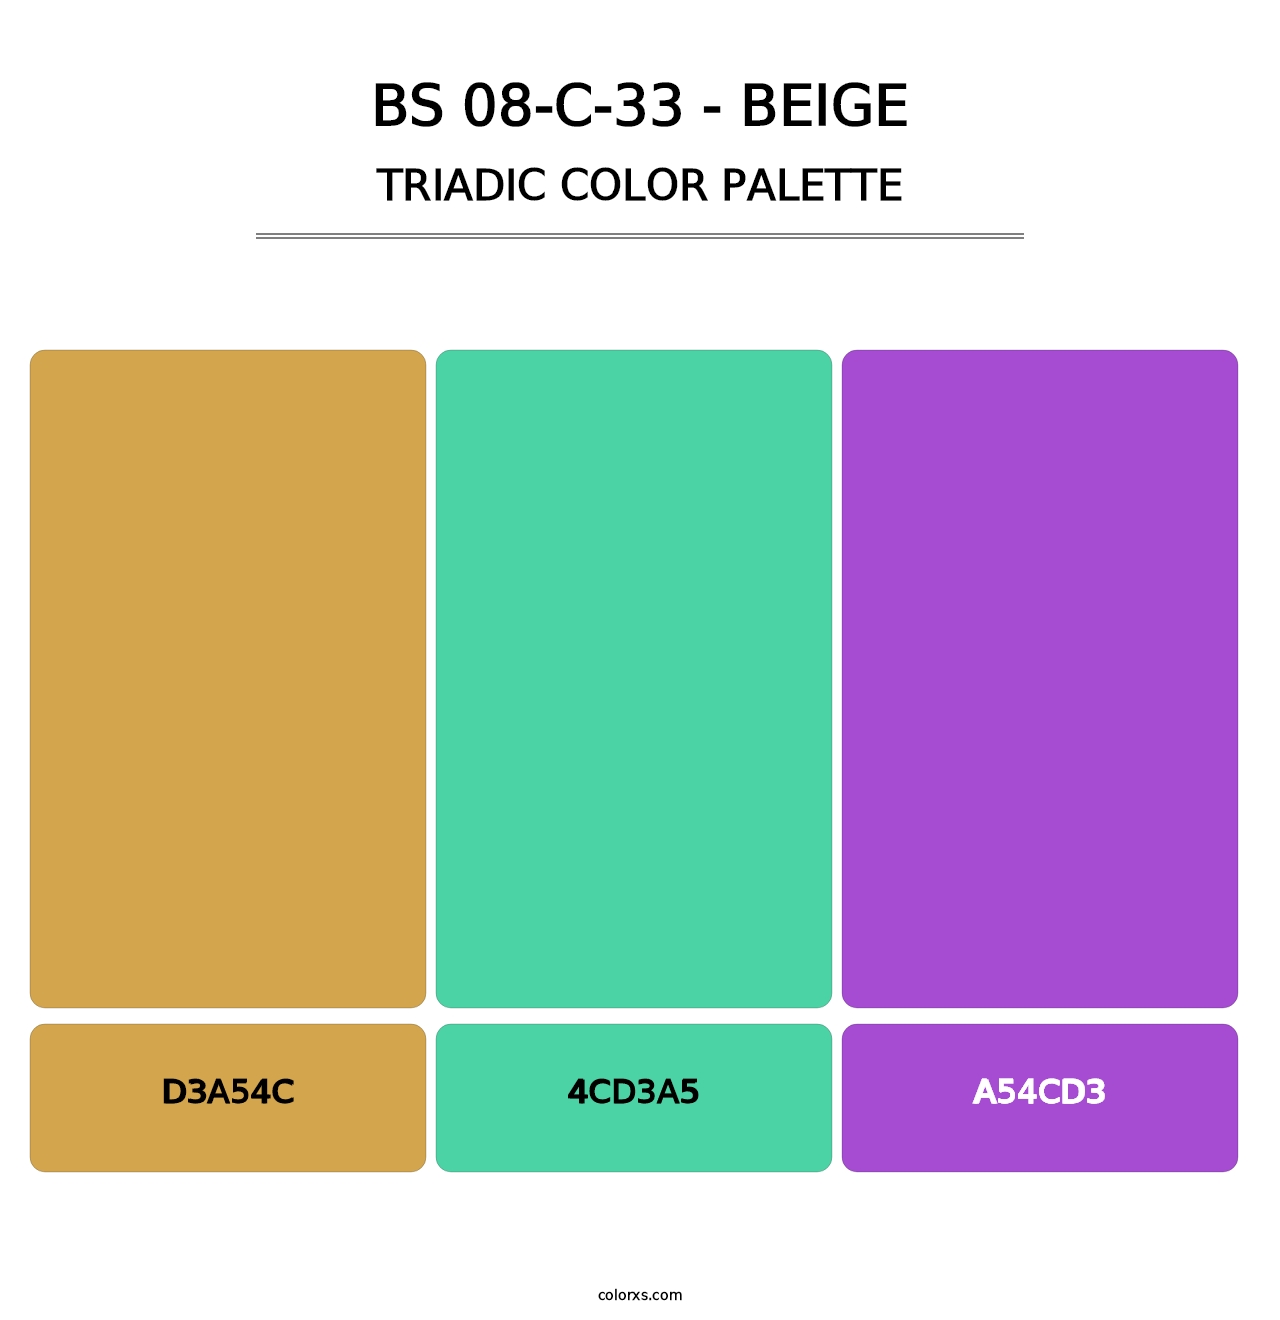 BS 08-C-33 - Beige - Triadic Color Palette